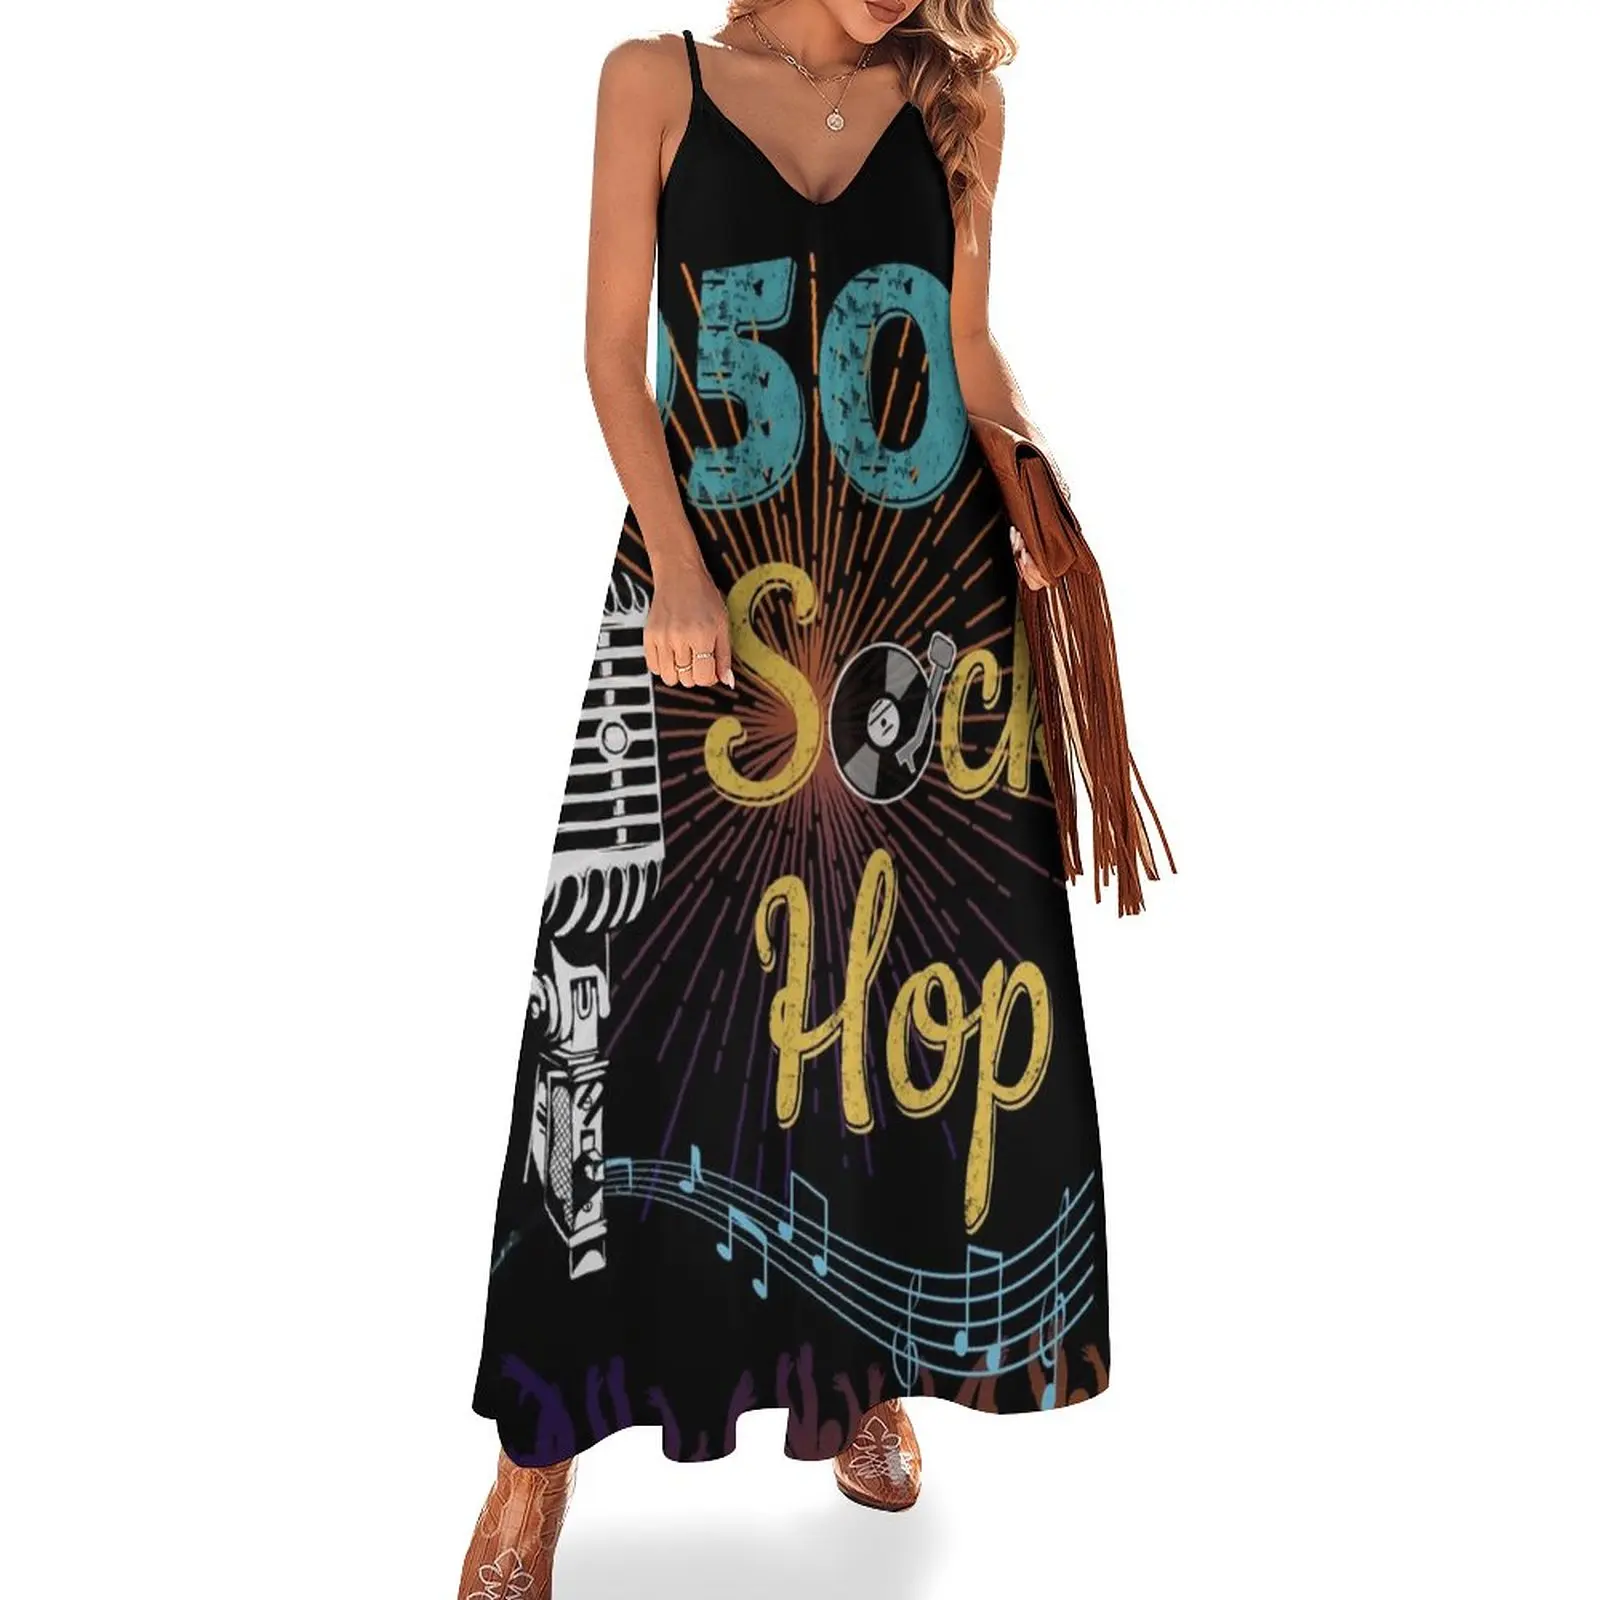 

1950's Sock Hop Sleeveless Dress luxury dresses Summer dresses for women women dresses